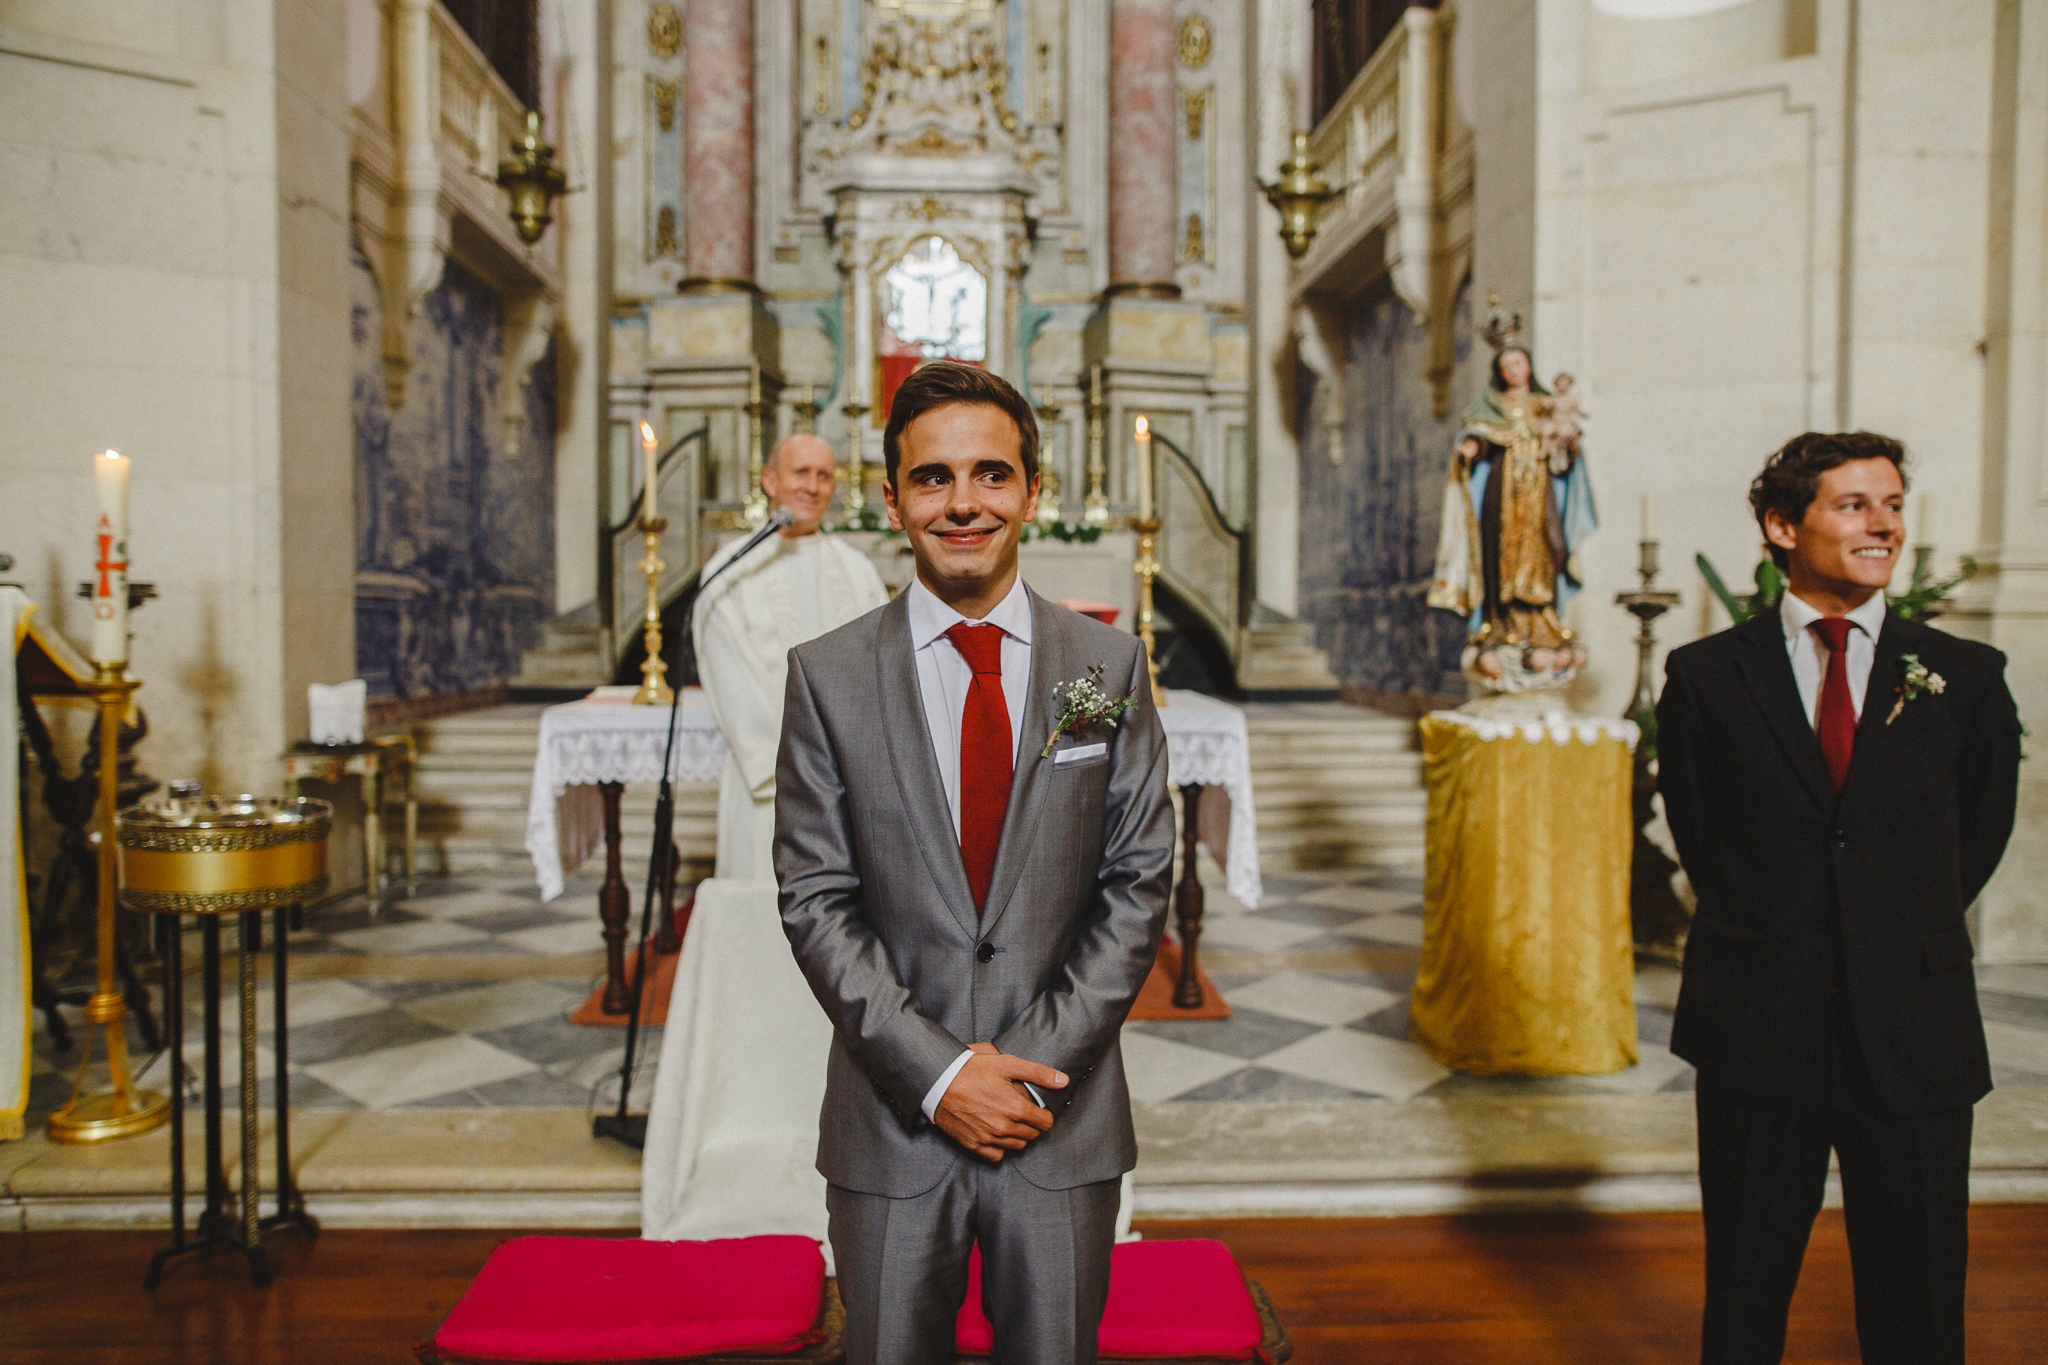 Fotografia de Casamento Óbidos, Documental Wedding Photography by Hello Twiggs